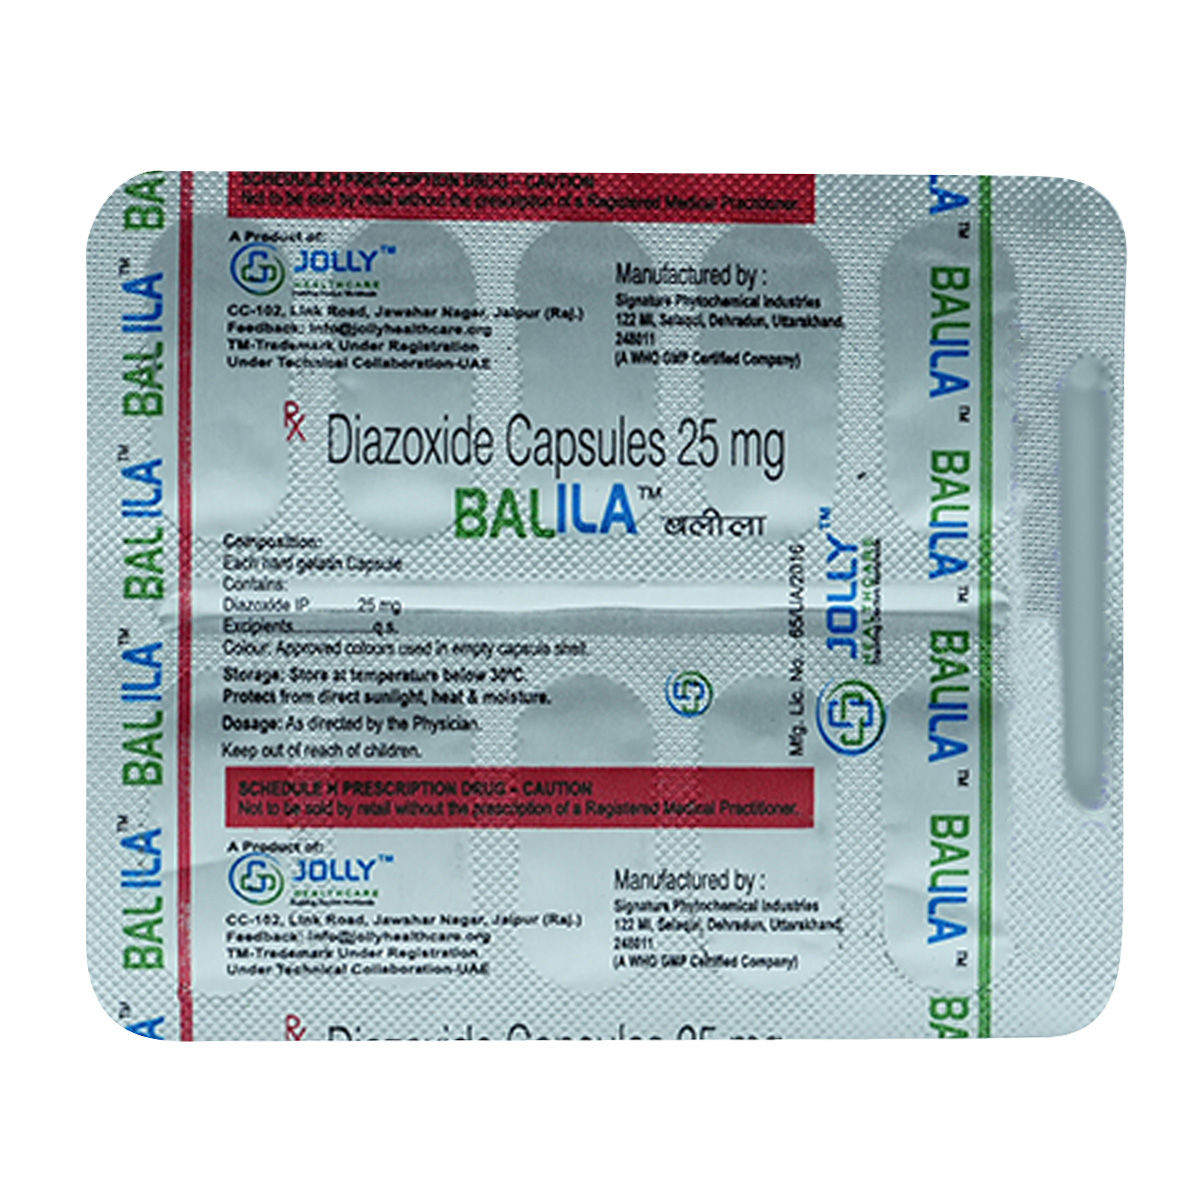 Buy Balila 25 mg Capsule 10's Online